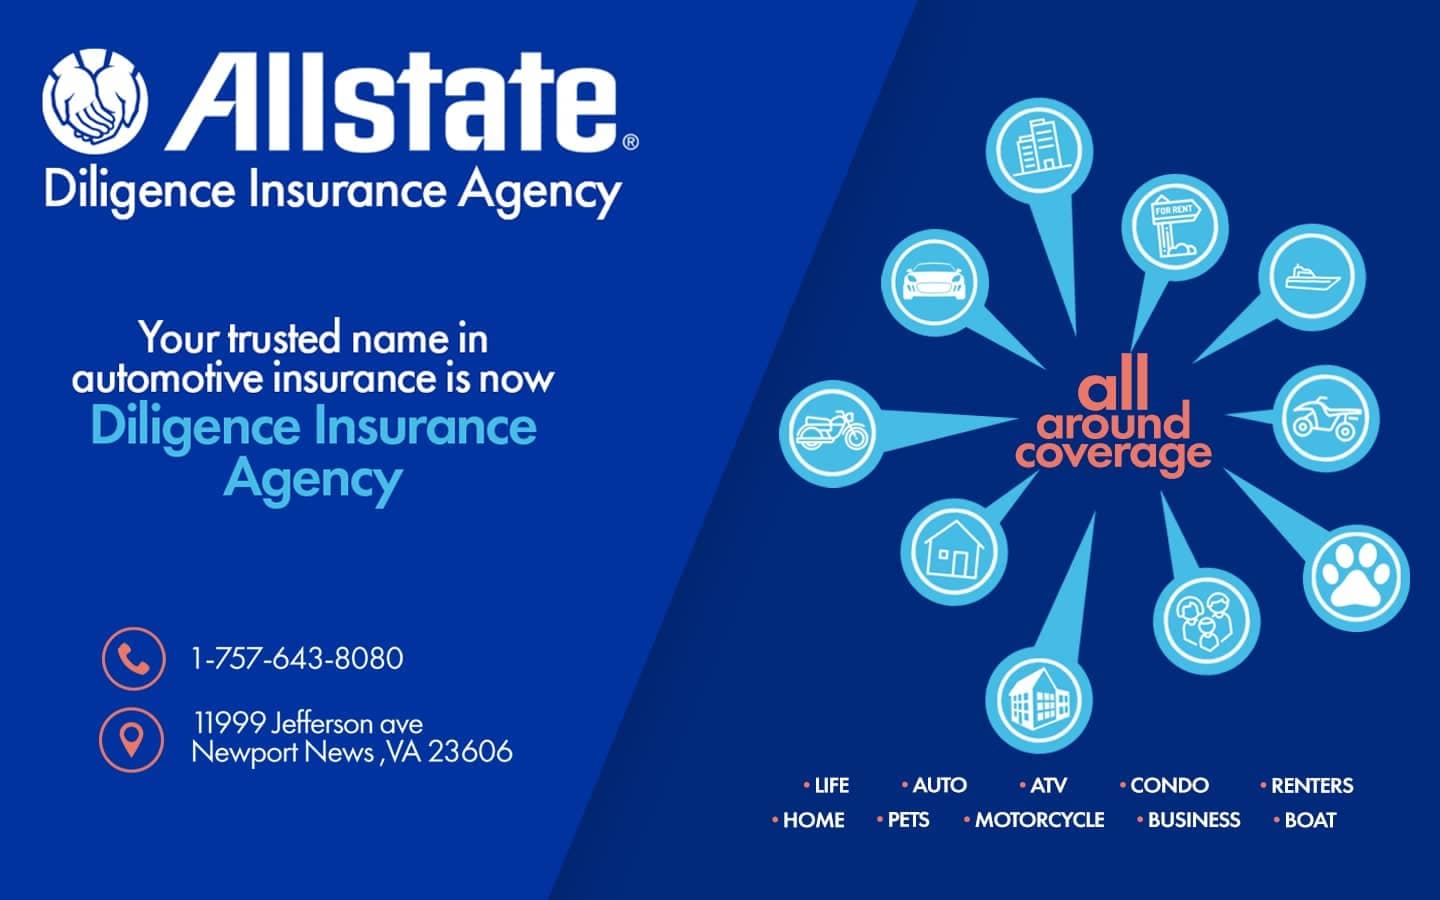 Allstate Diligence Insurance Agency banner